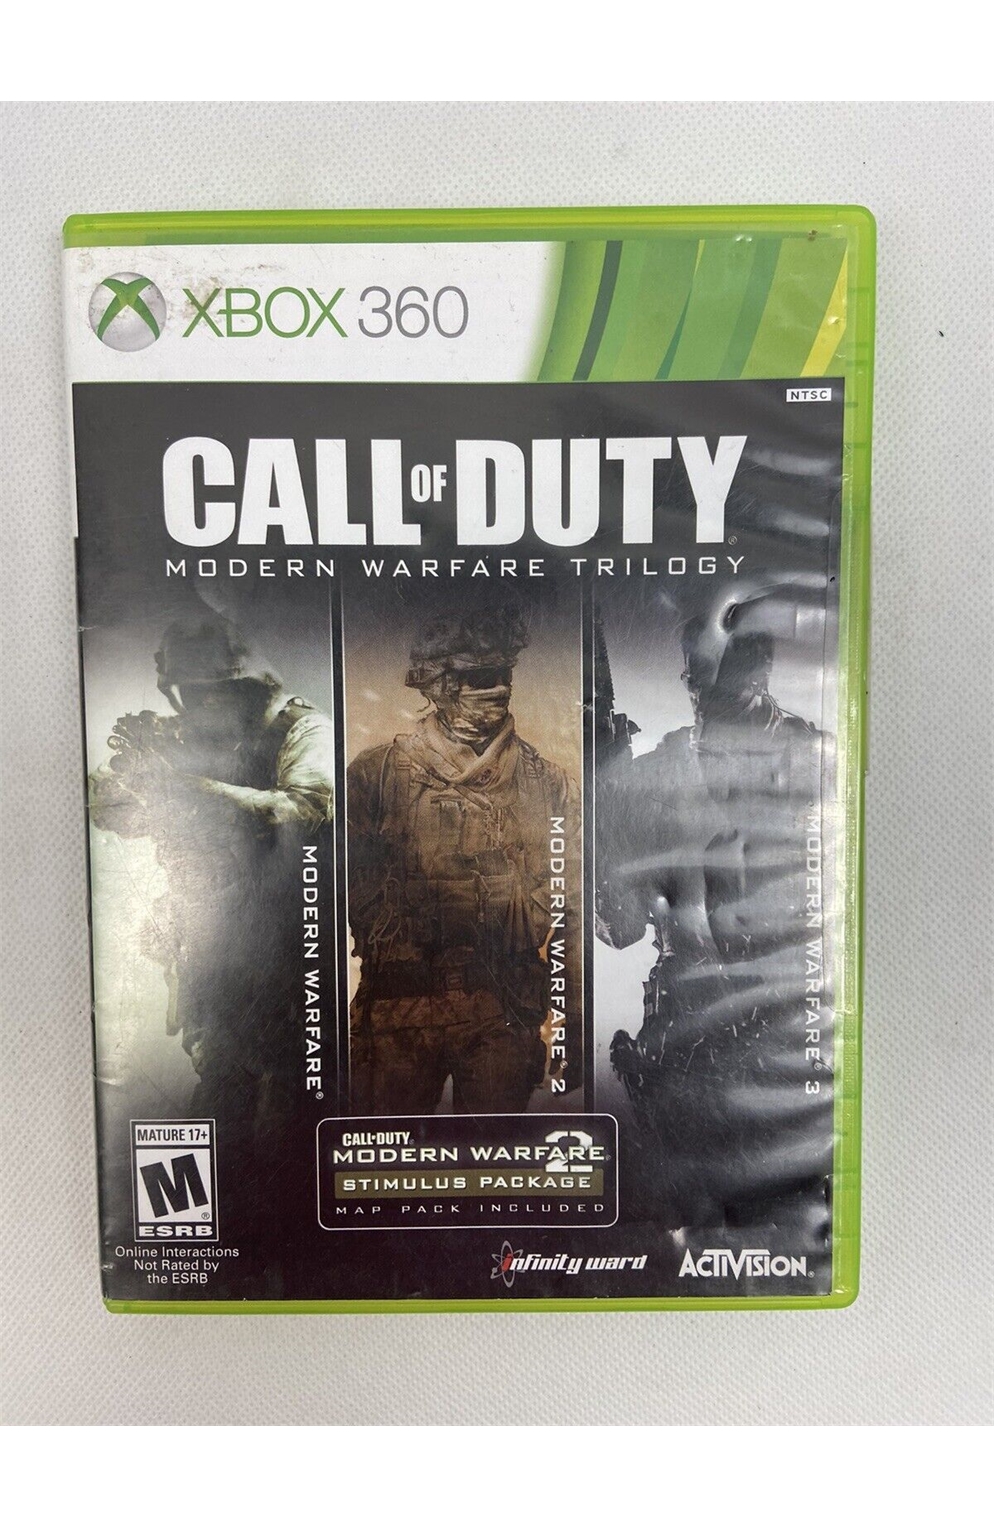 Xbox 360 Xb360 Call of Duty Modern Warfare Trilogy